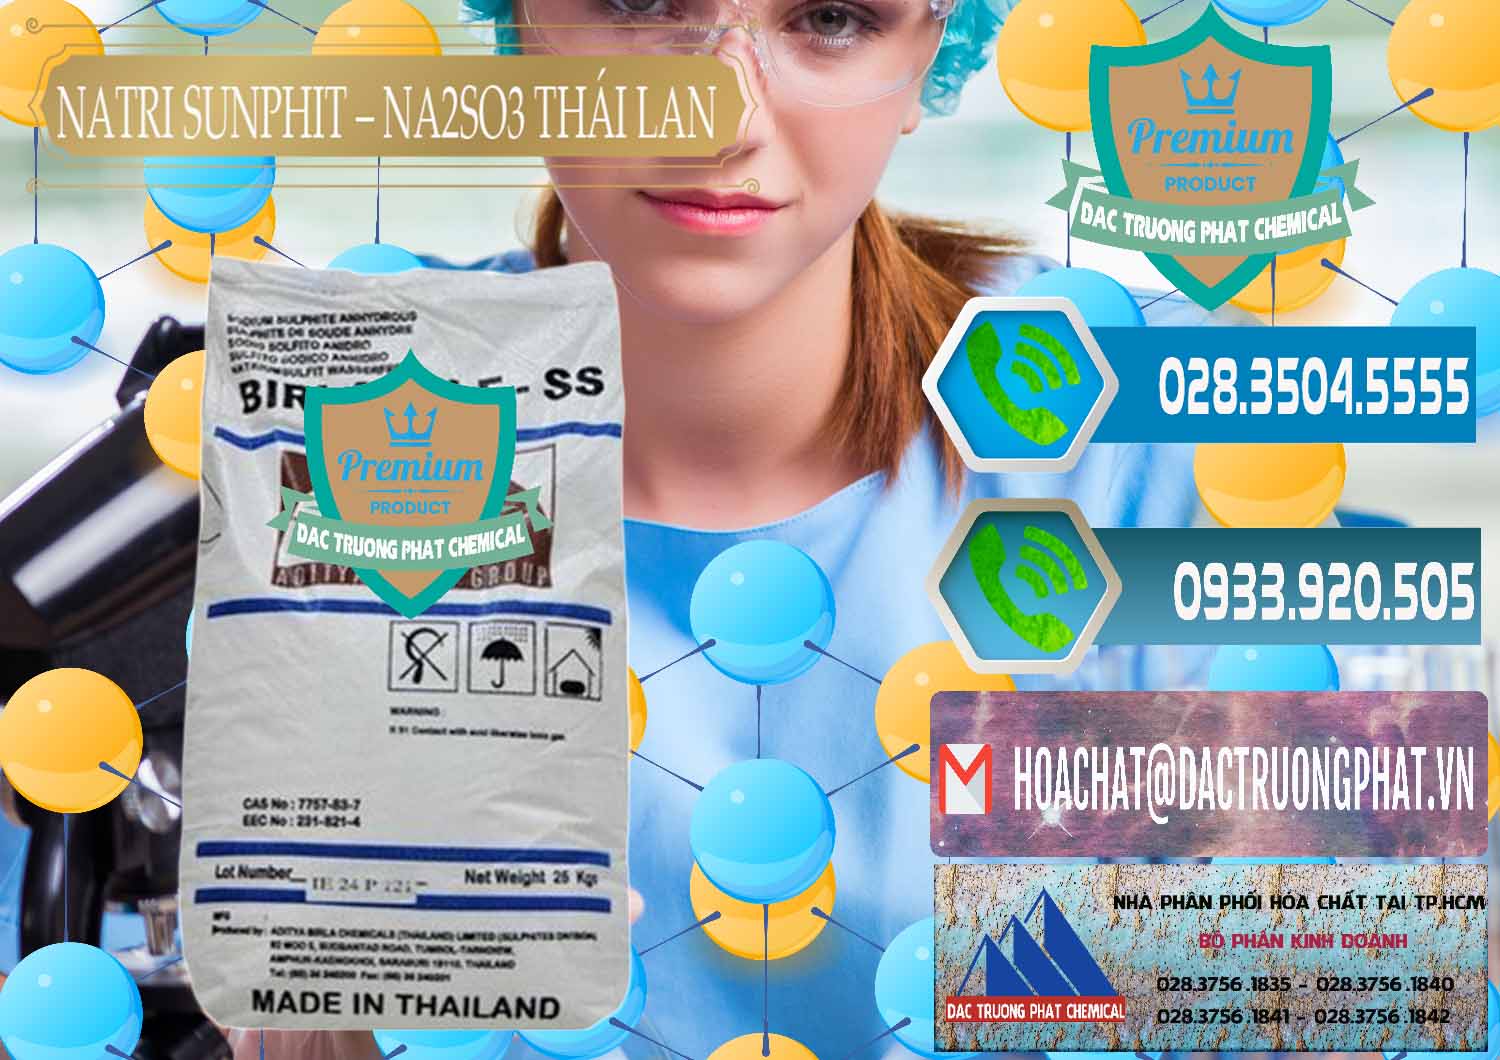 Cty chuyên cung cấp - bán Natri Sunphit - NA2SO3 Thái Lan - 0105 - Công ty chuyên kinh doanh & phân phối hóa chất tại TP.HCM - congtyhoachat.net